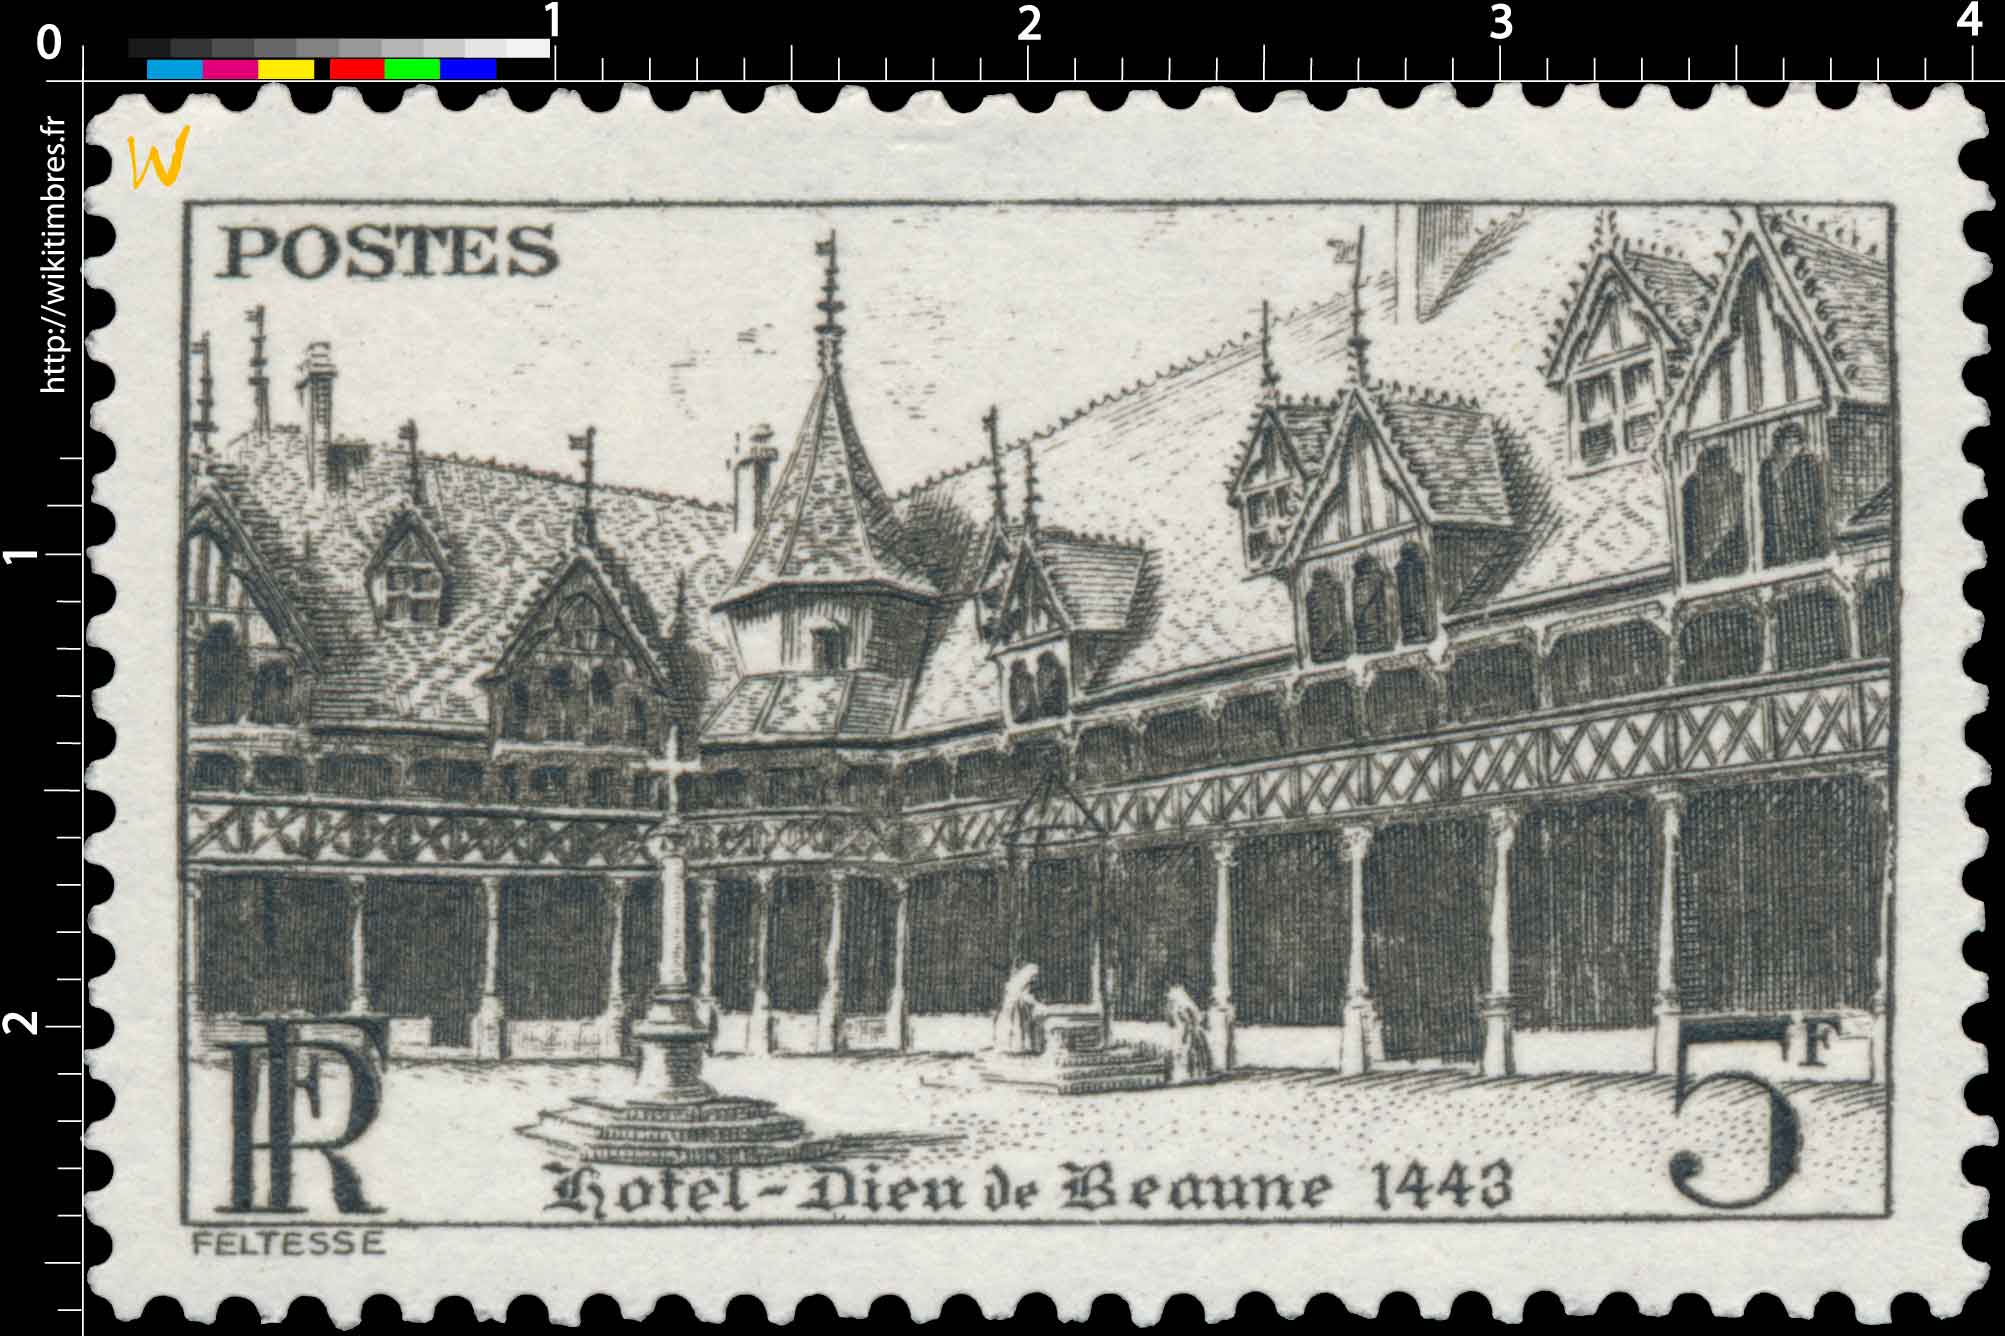 Hôtel-Dieu de Beaune 1443